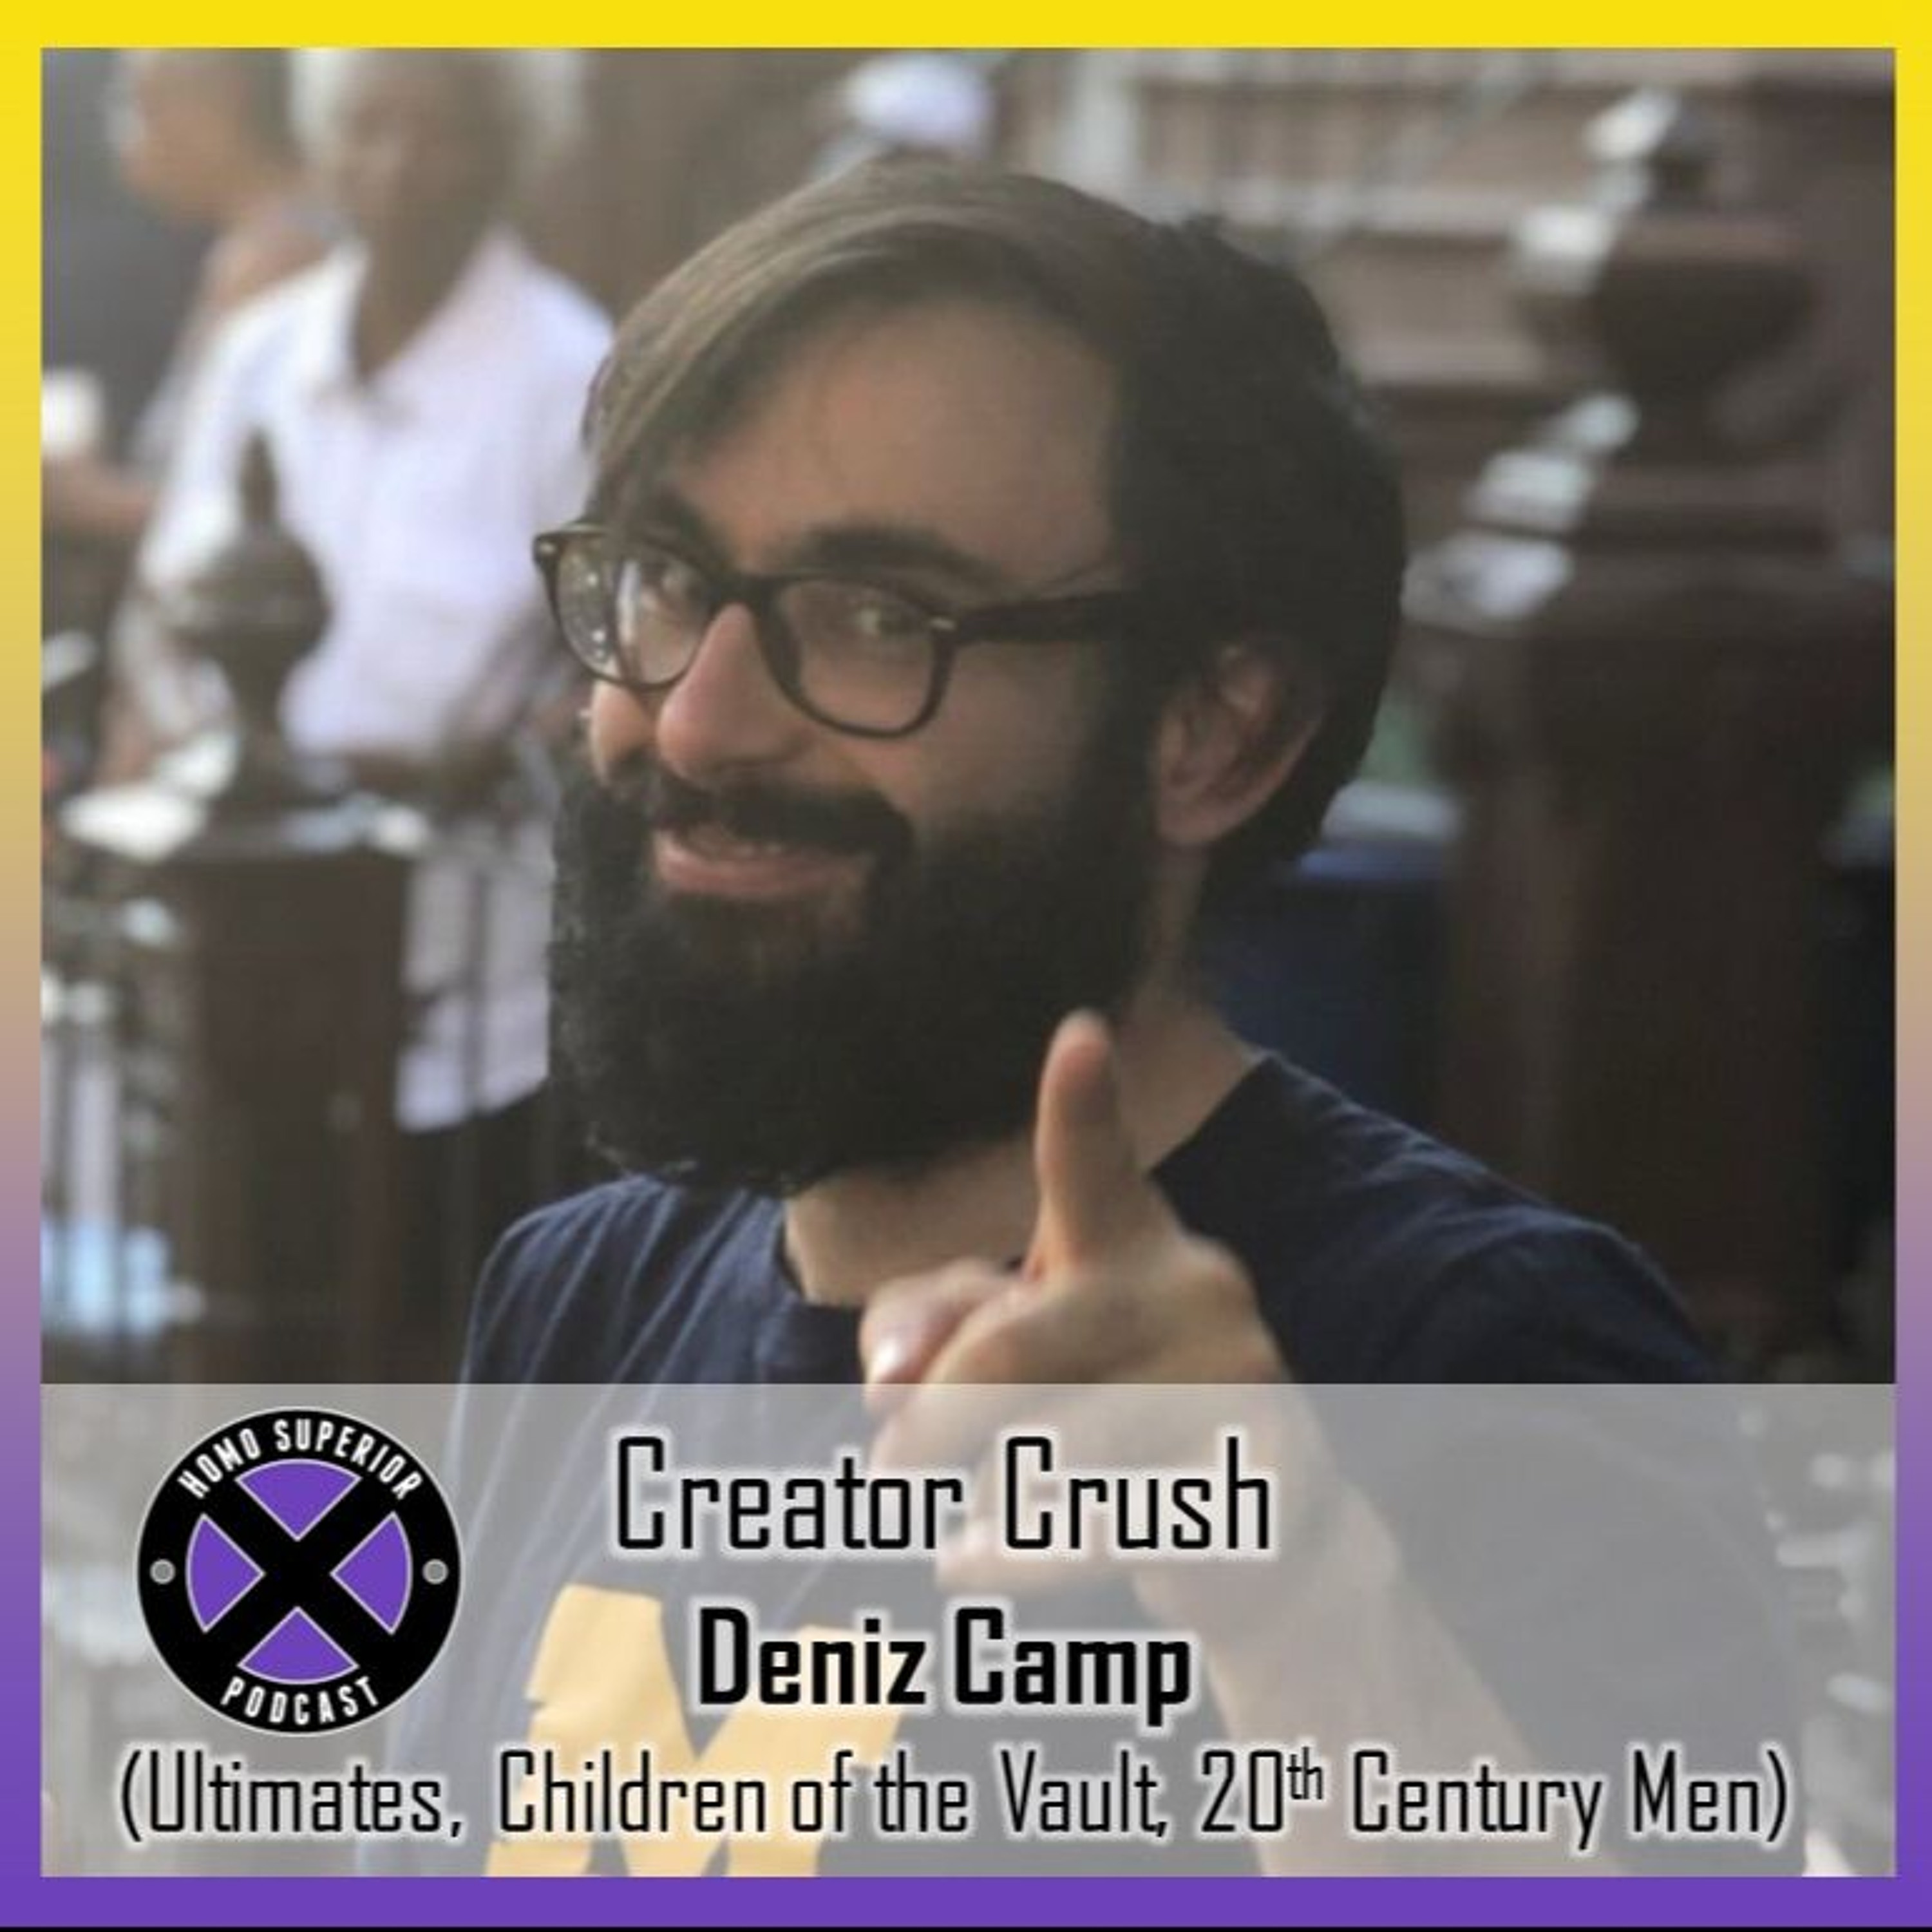 Creator Crush - Deniz Camp: The Ultimates, Children of the Vault, 20th Century Men